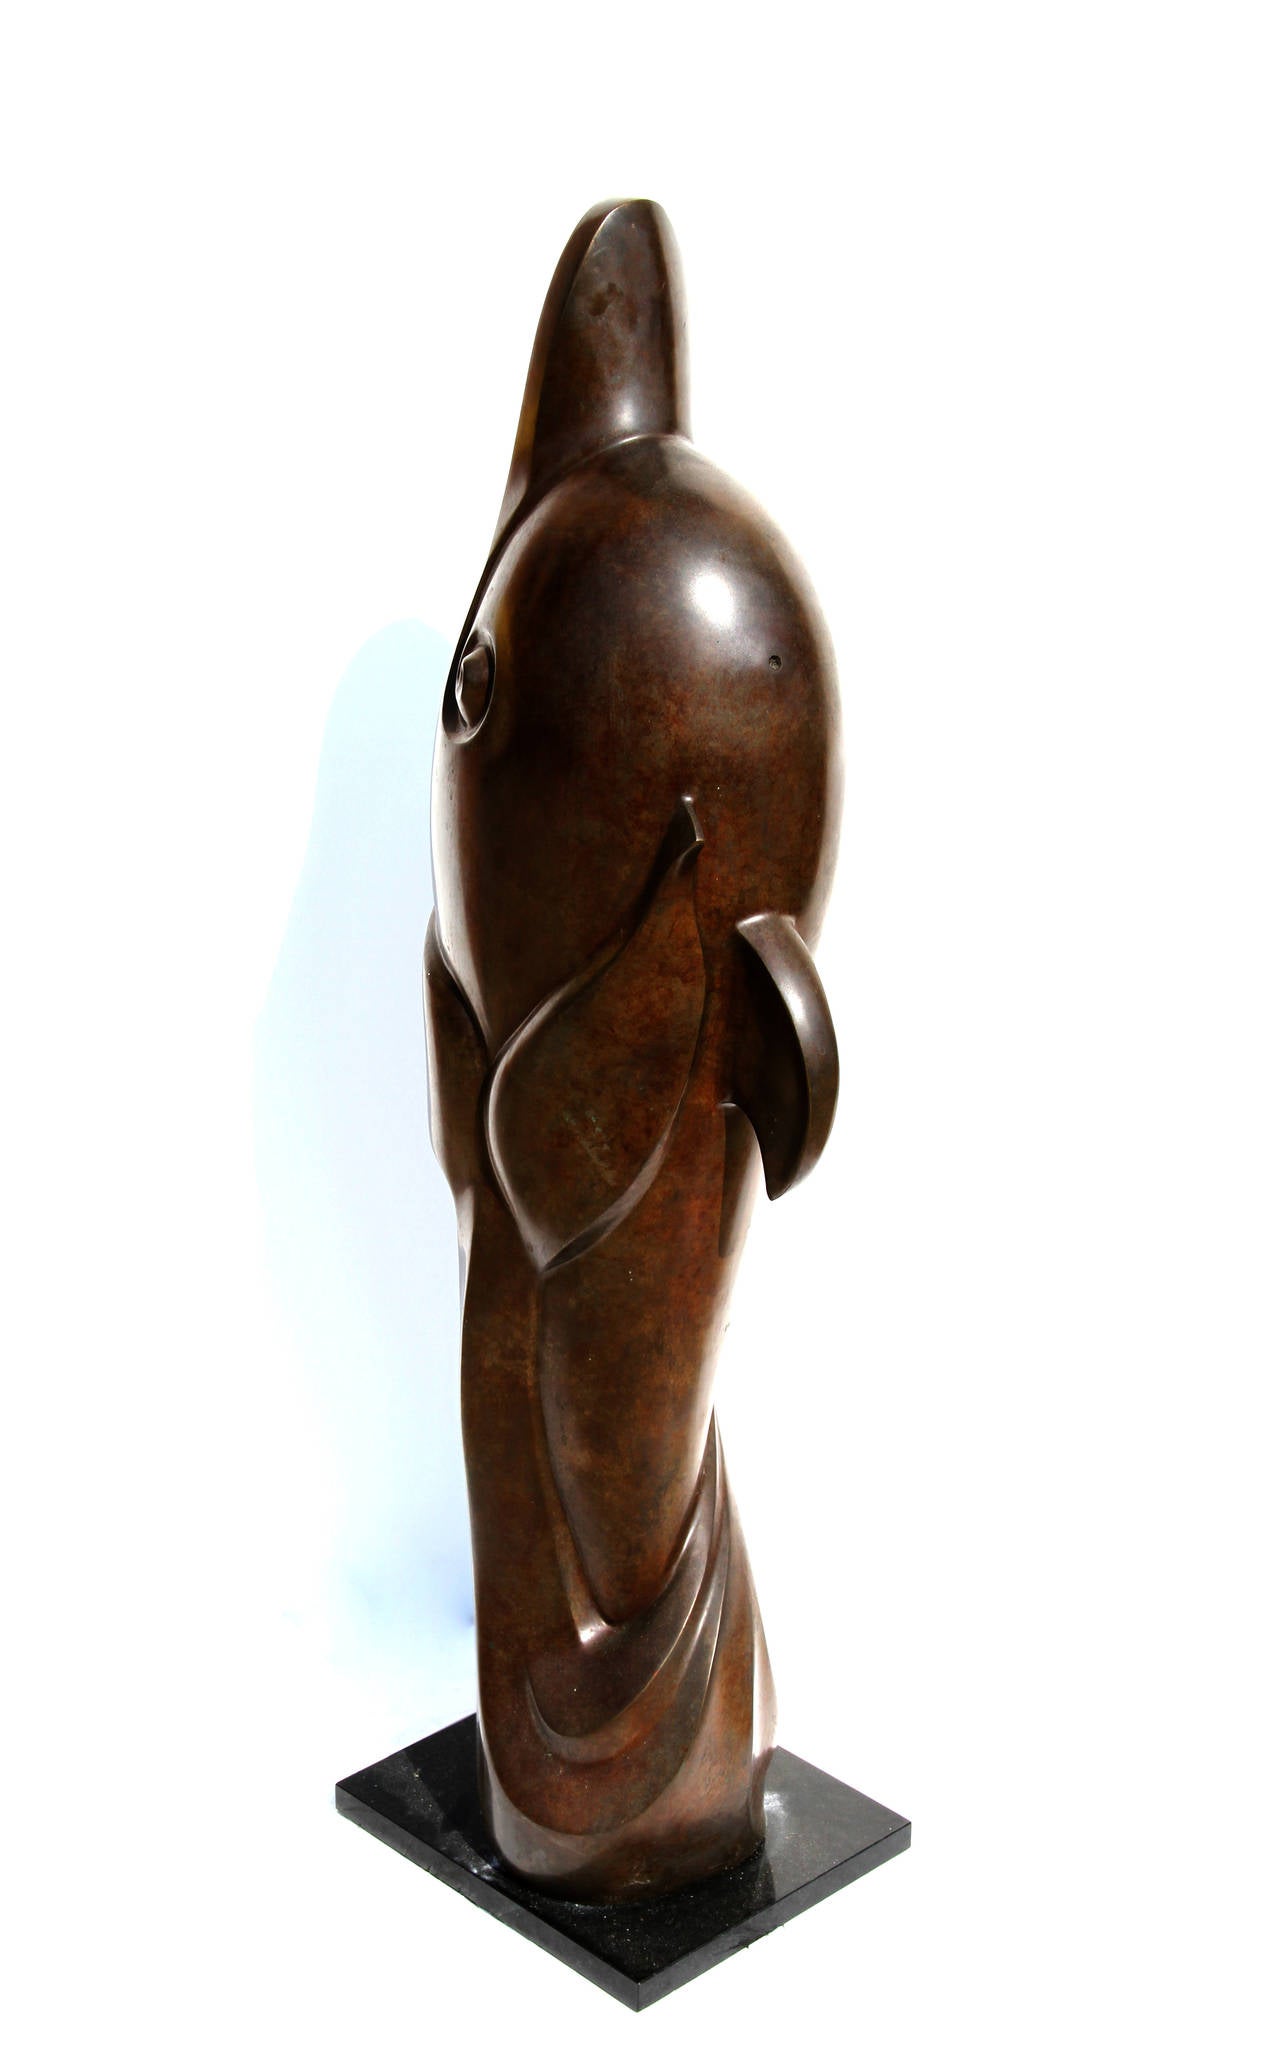 Künstler: Unbekannt, Russisch
Titel: Delphin
Medium: Bronze-Skulptur mit Patina
Größe: 35 in. x 13 in. x 8 in. (88,9 cm x 33,02 cm x 20,32 cm)